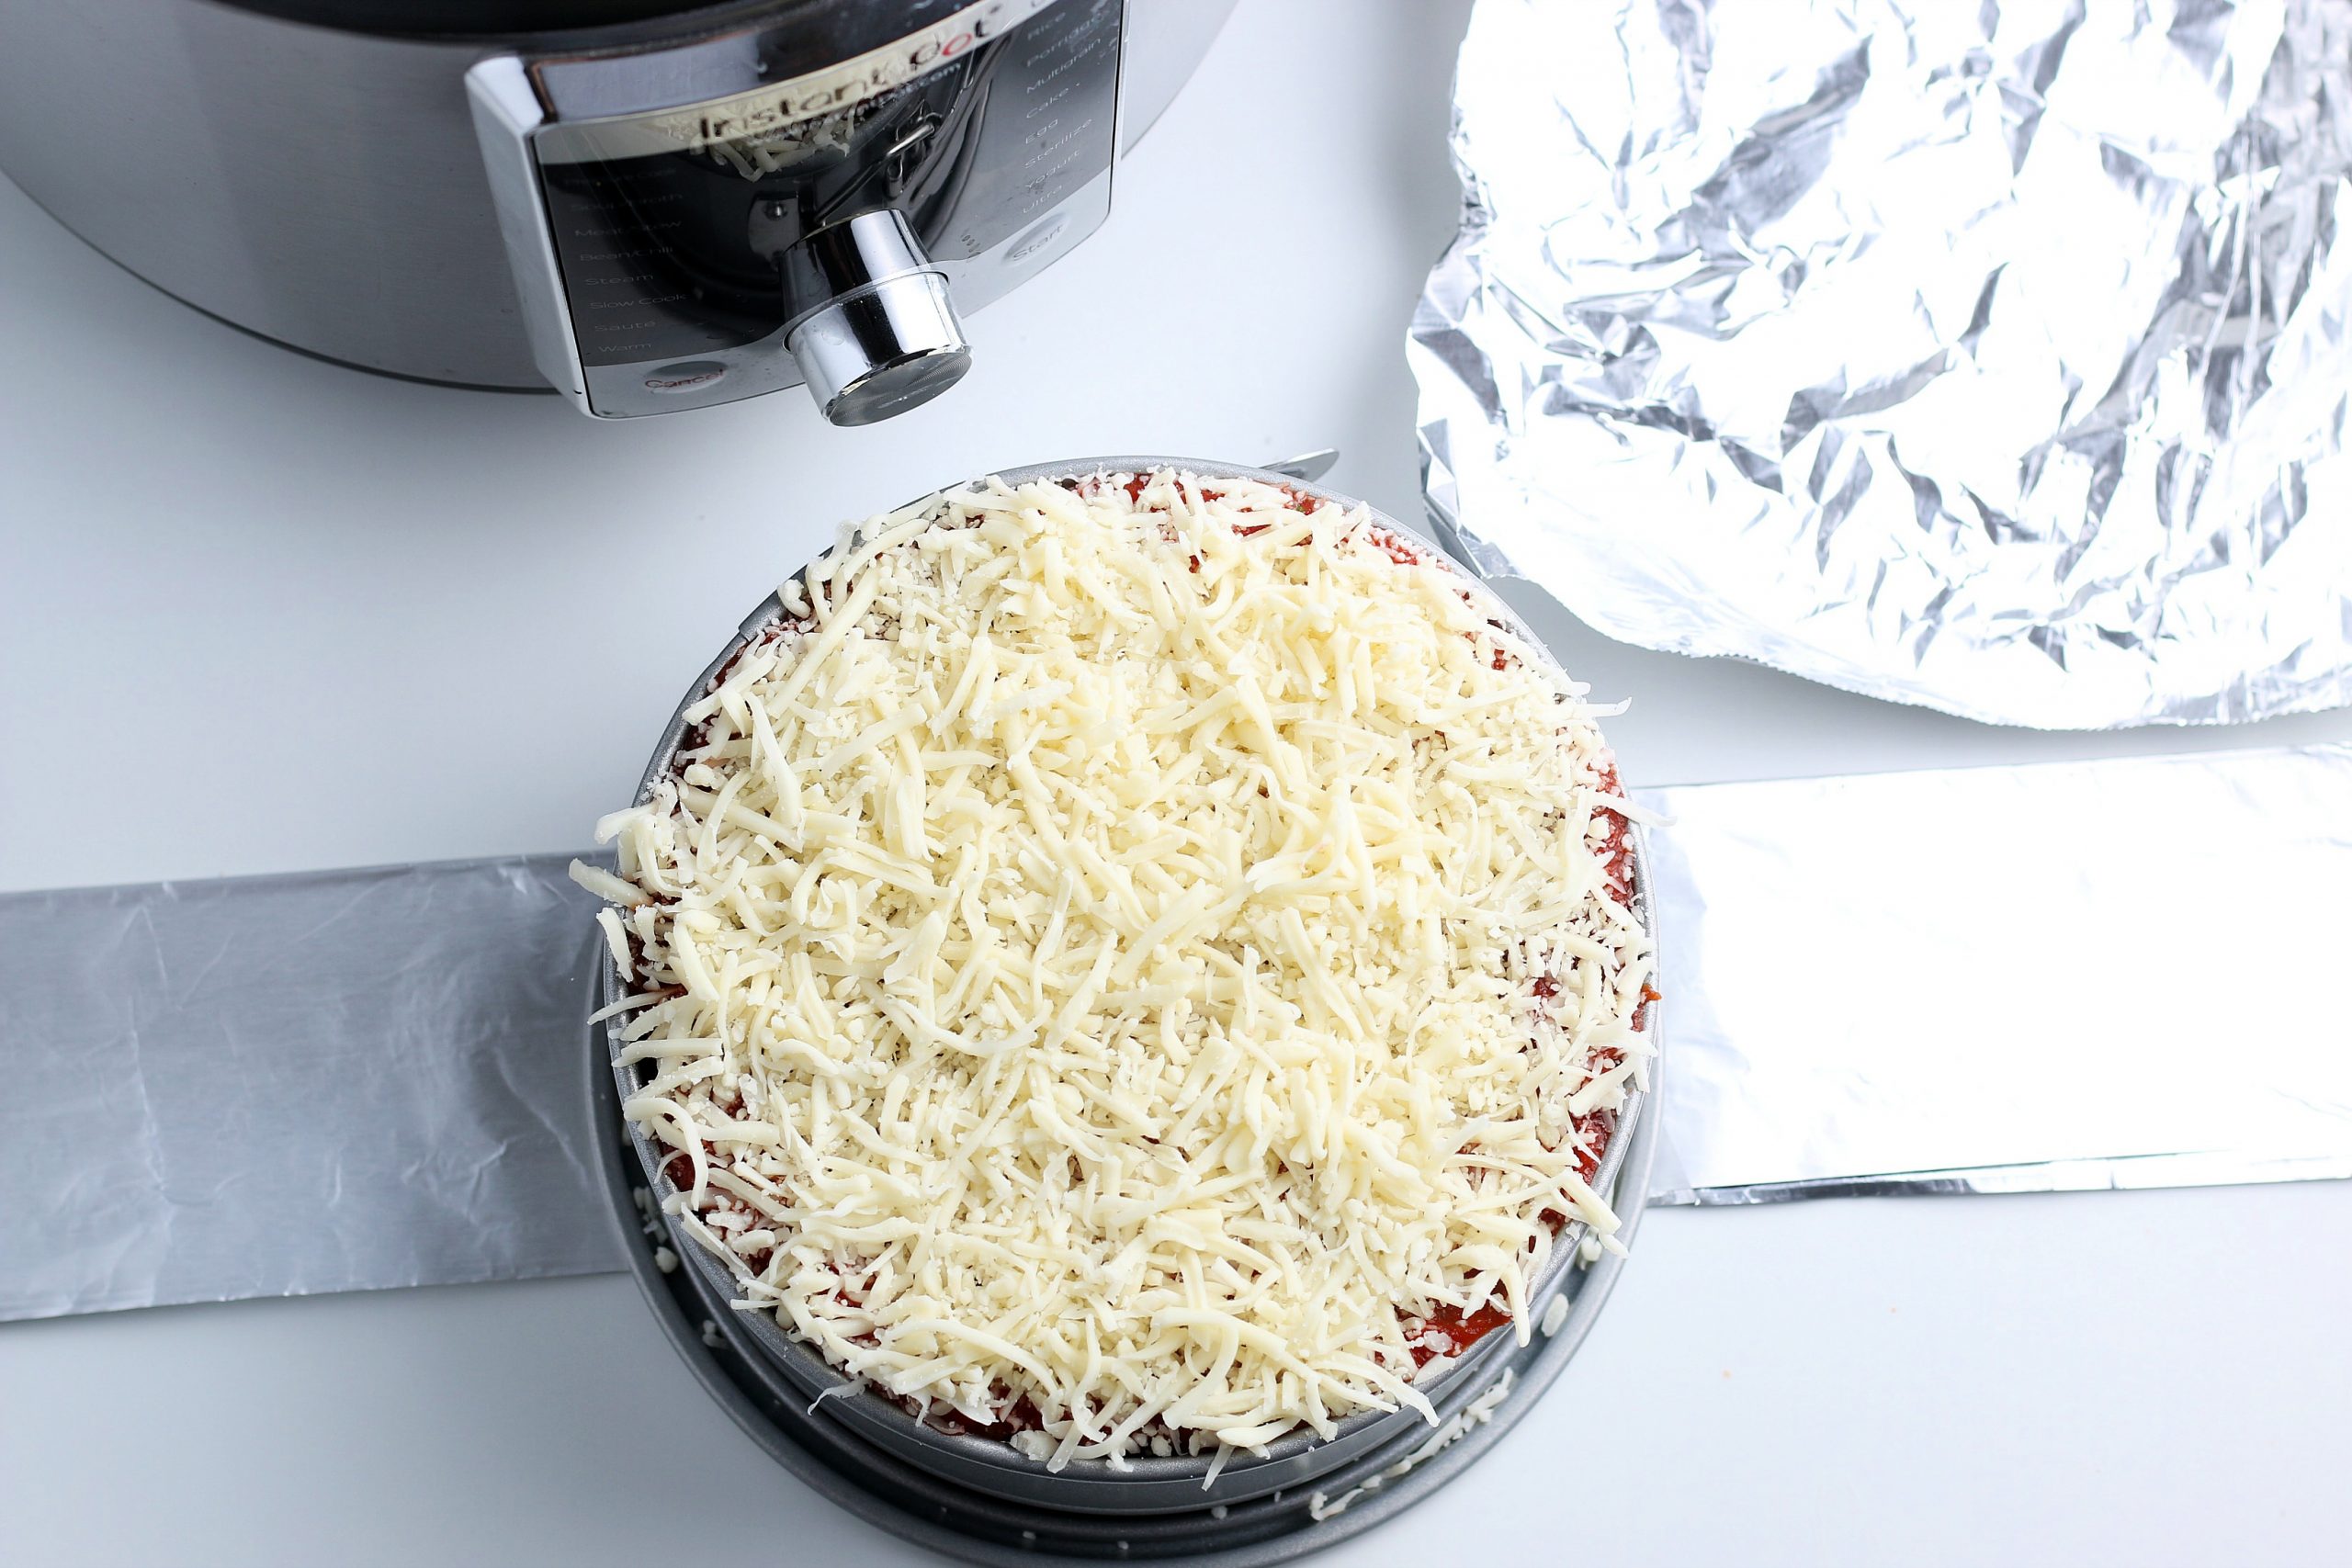 complete uncooked lasagna in springform pan